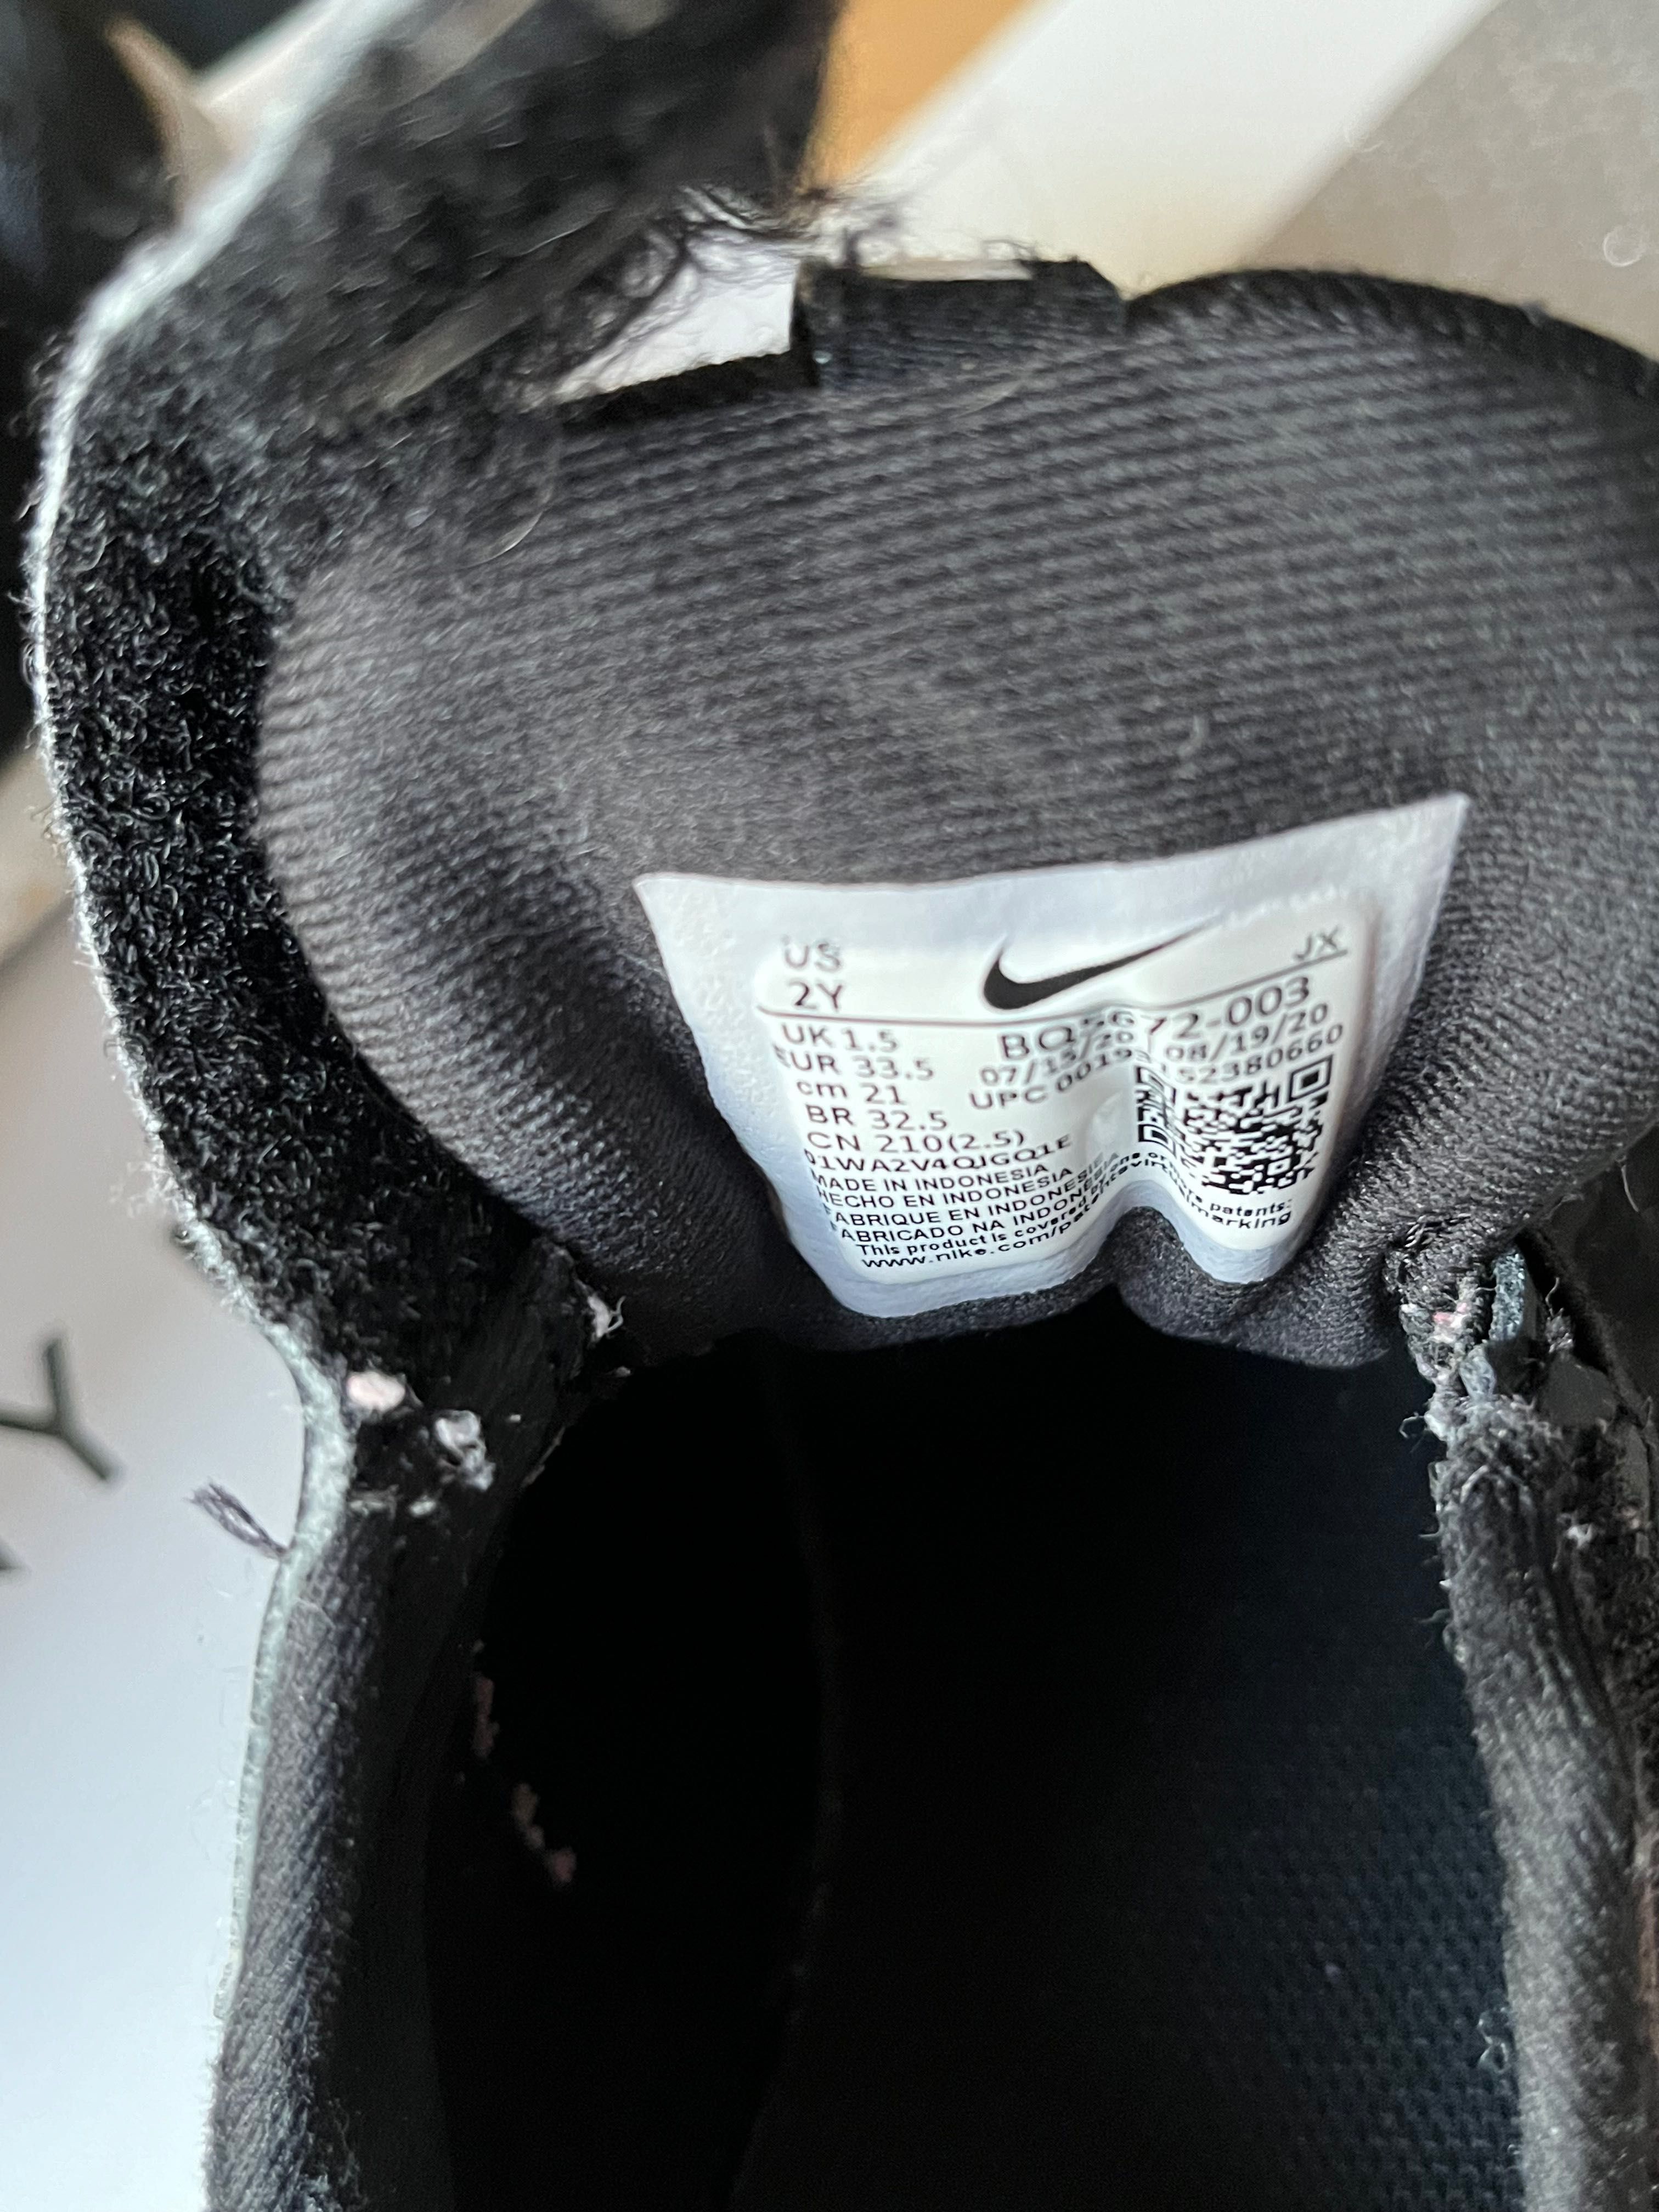 Adidasy czarne firma Nike rozm. 33,5